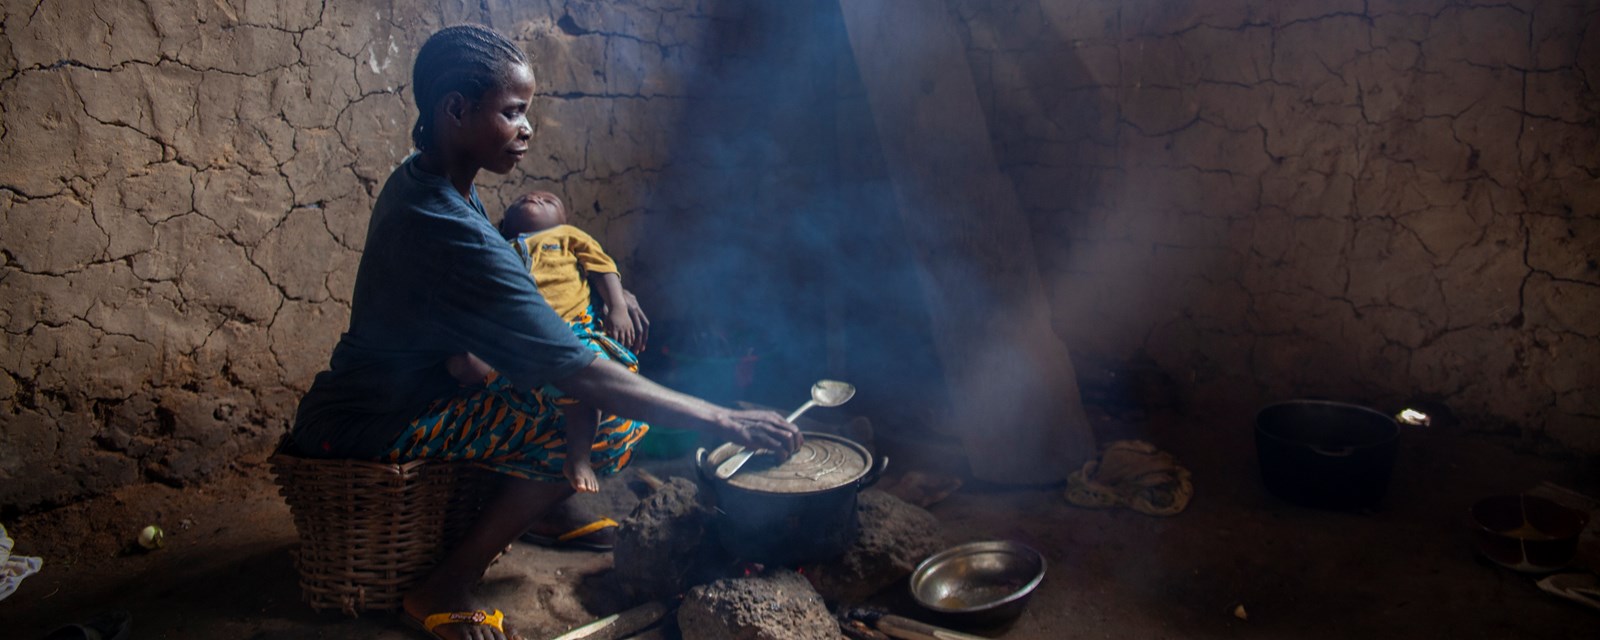 I Liberia lager en kvinne mat til familien. 